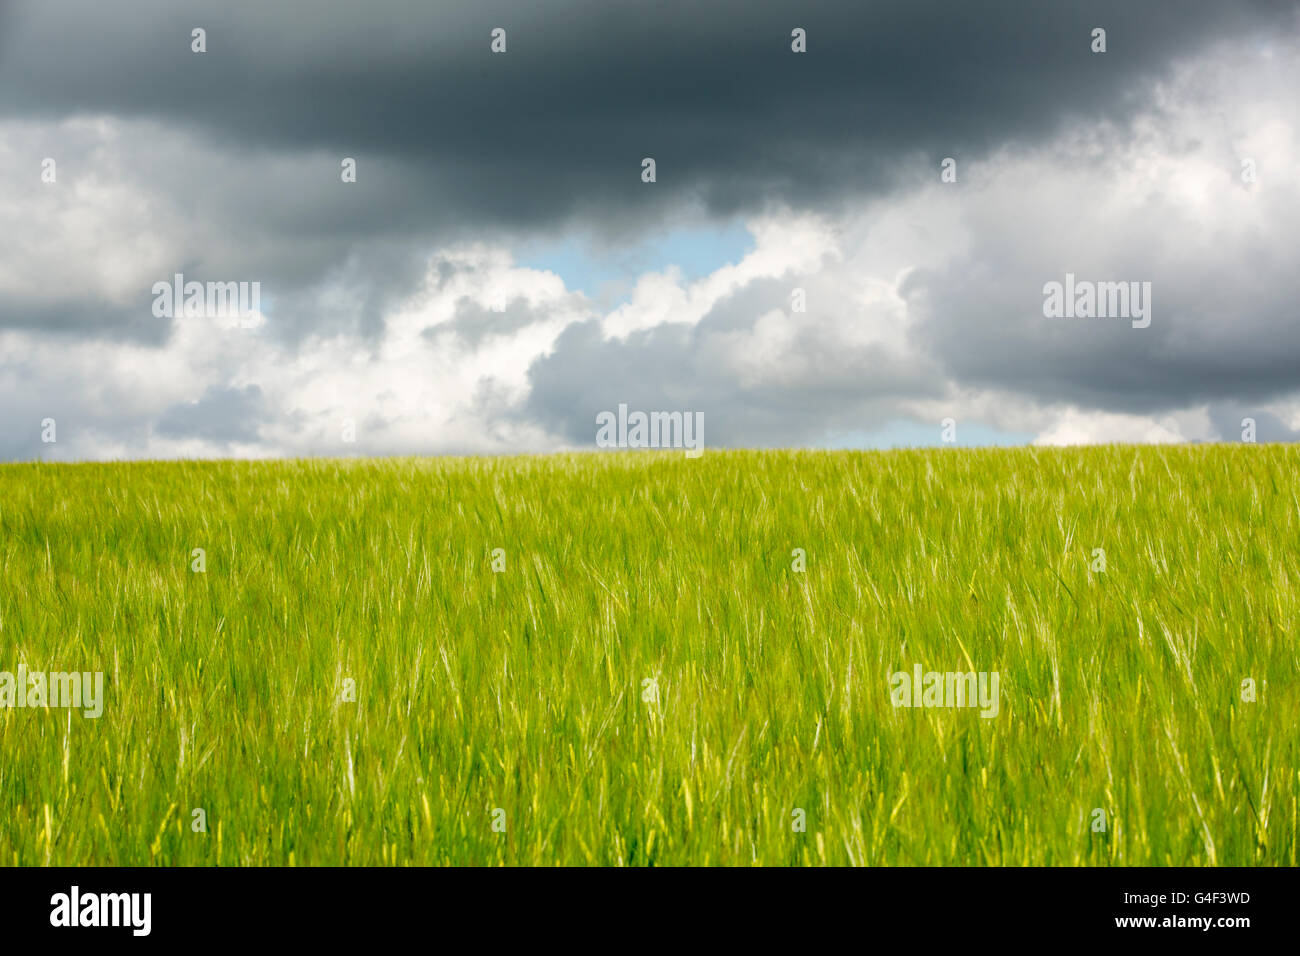 Vista astratta di un colore verde brillante campo di grano al vento. Impostare contro una nube scura riempito il cielo. Foto Stock